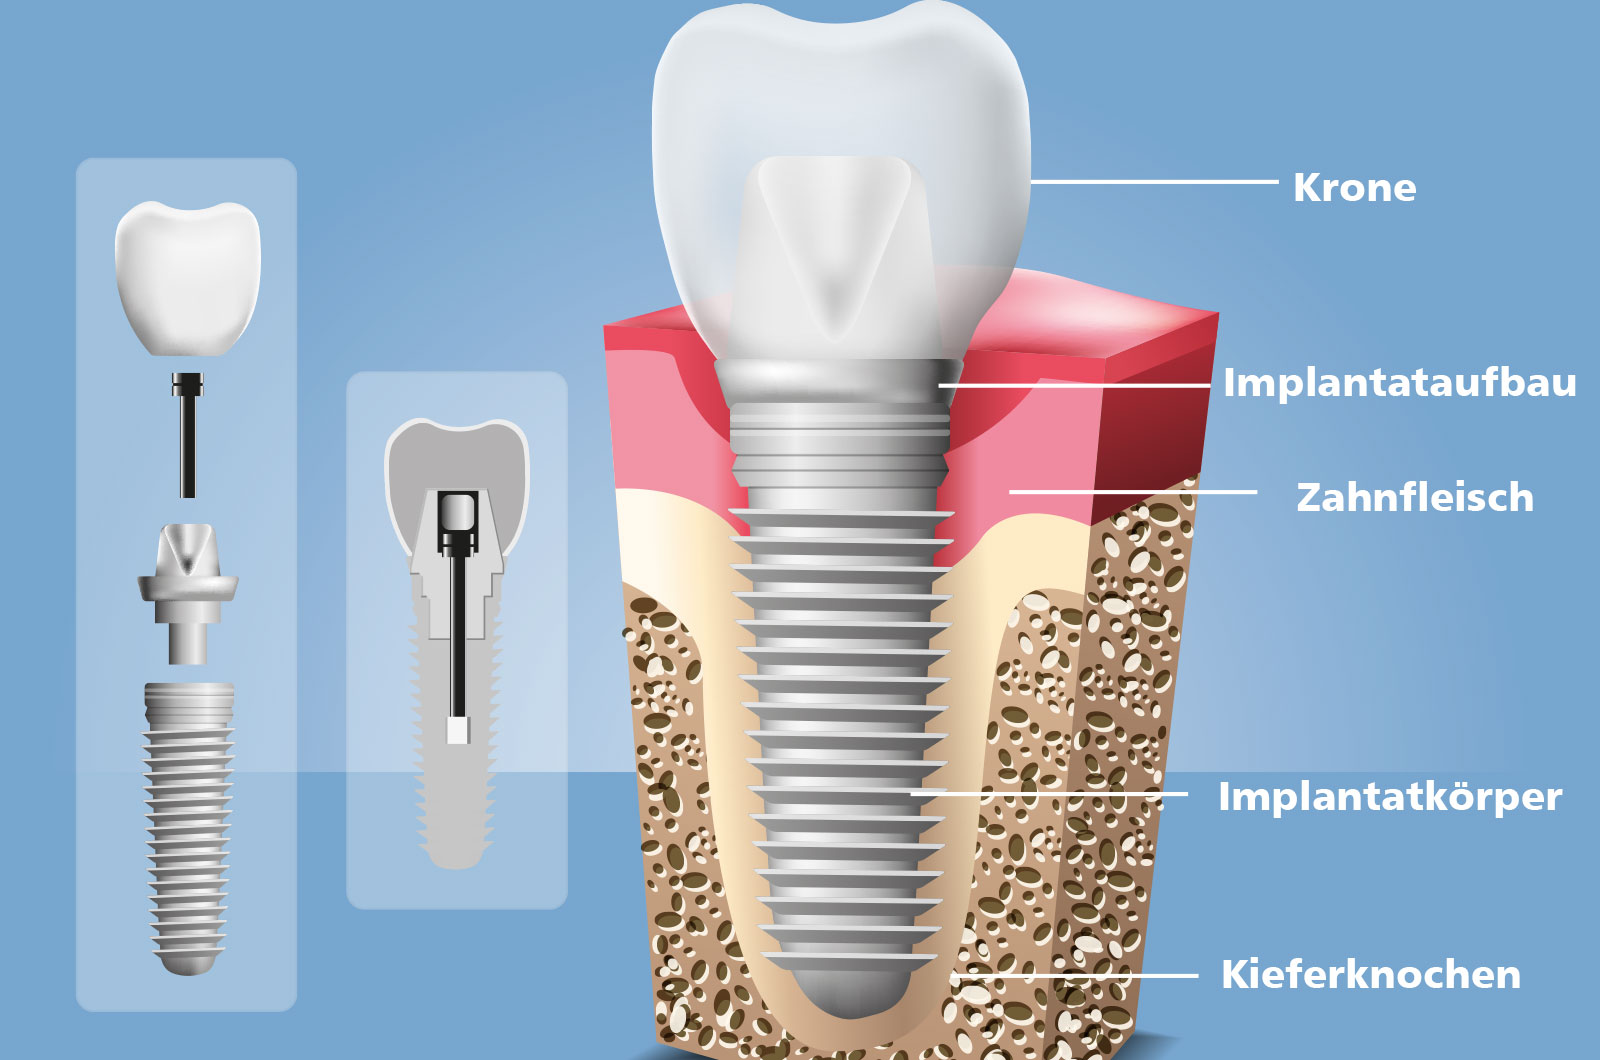 Aufbau Zahnimplantat, Krone, Implantataufbau, Zahnfleisch, Implantatkörper, Kieferknochen